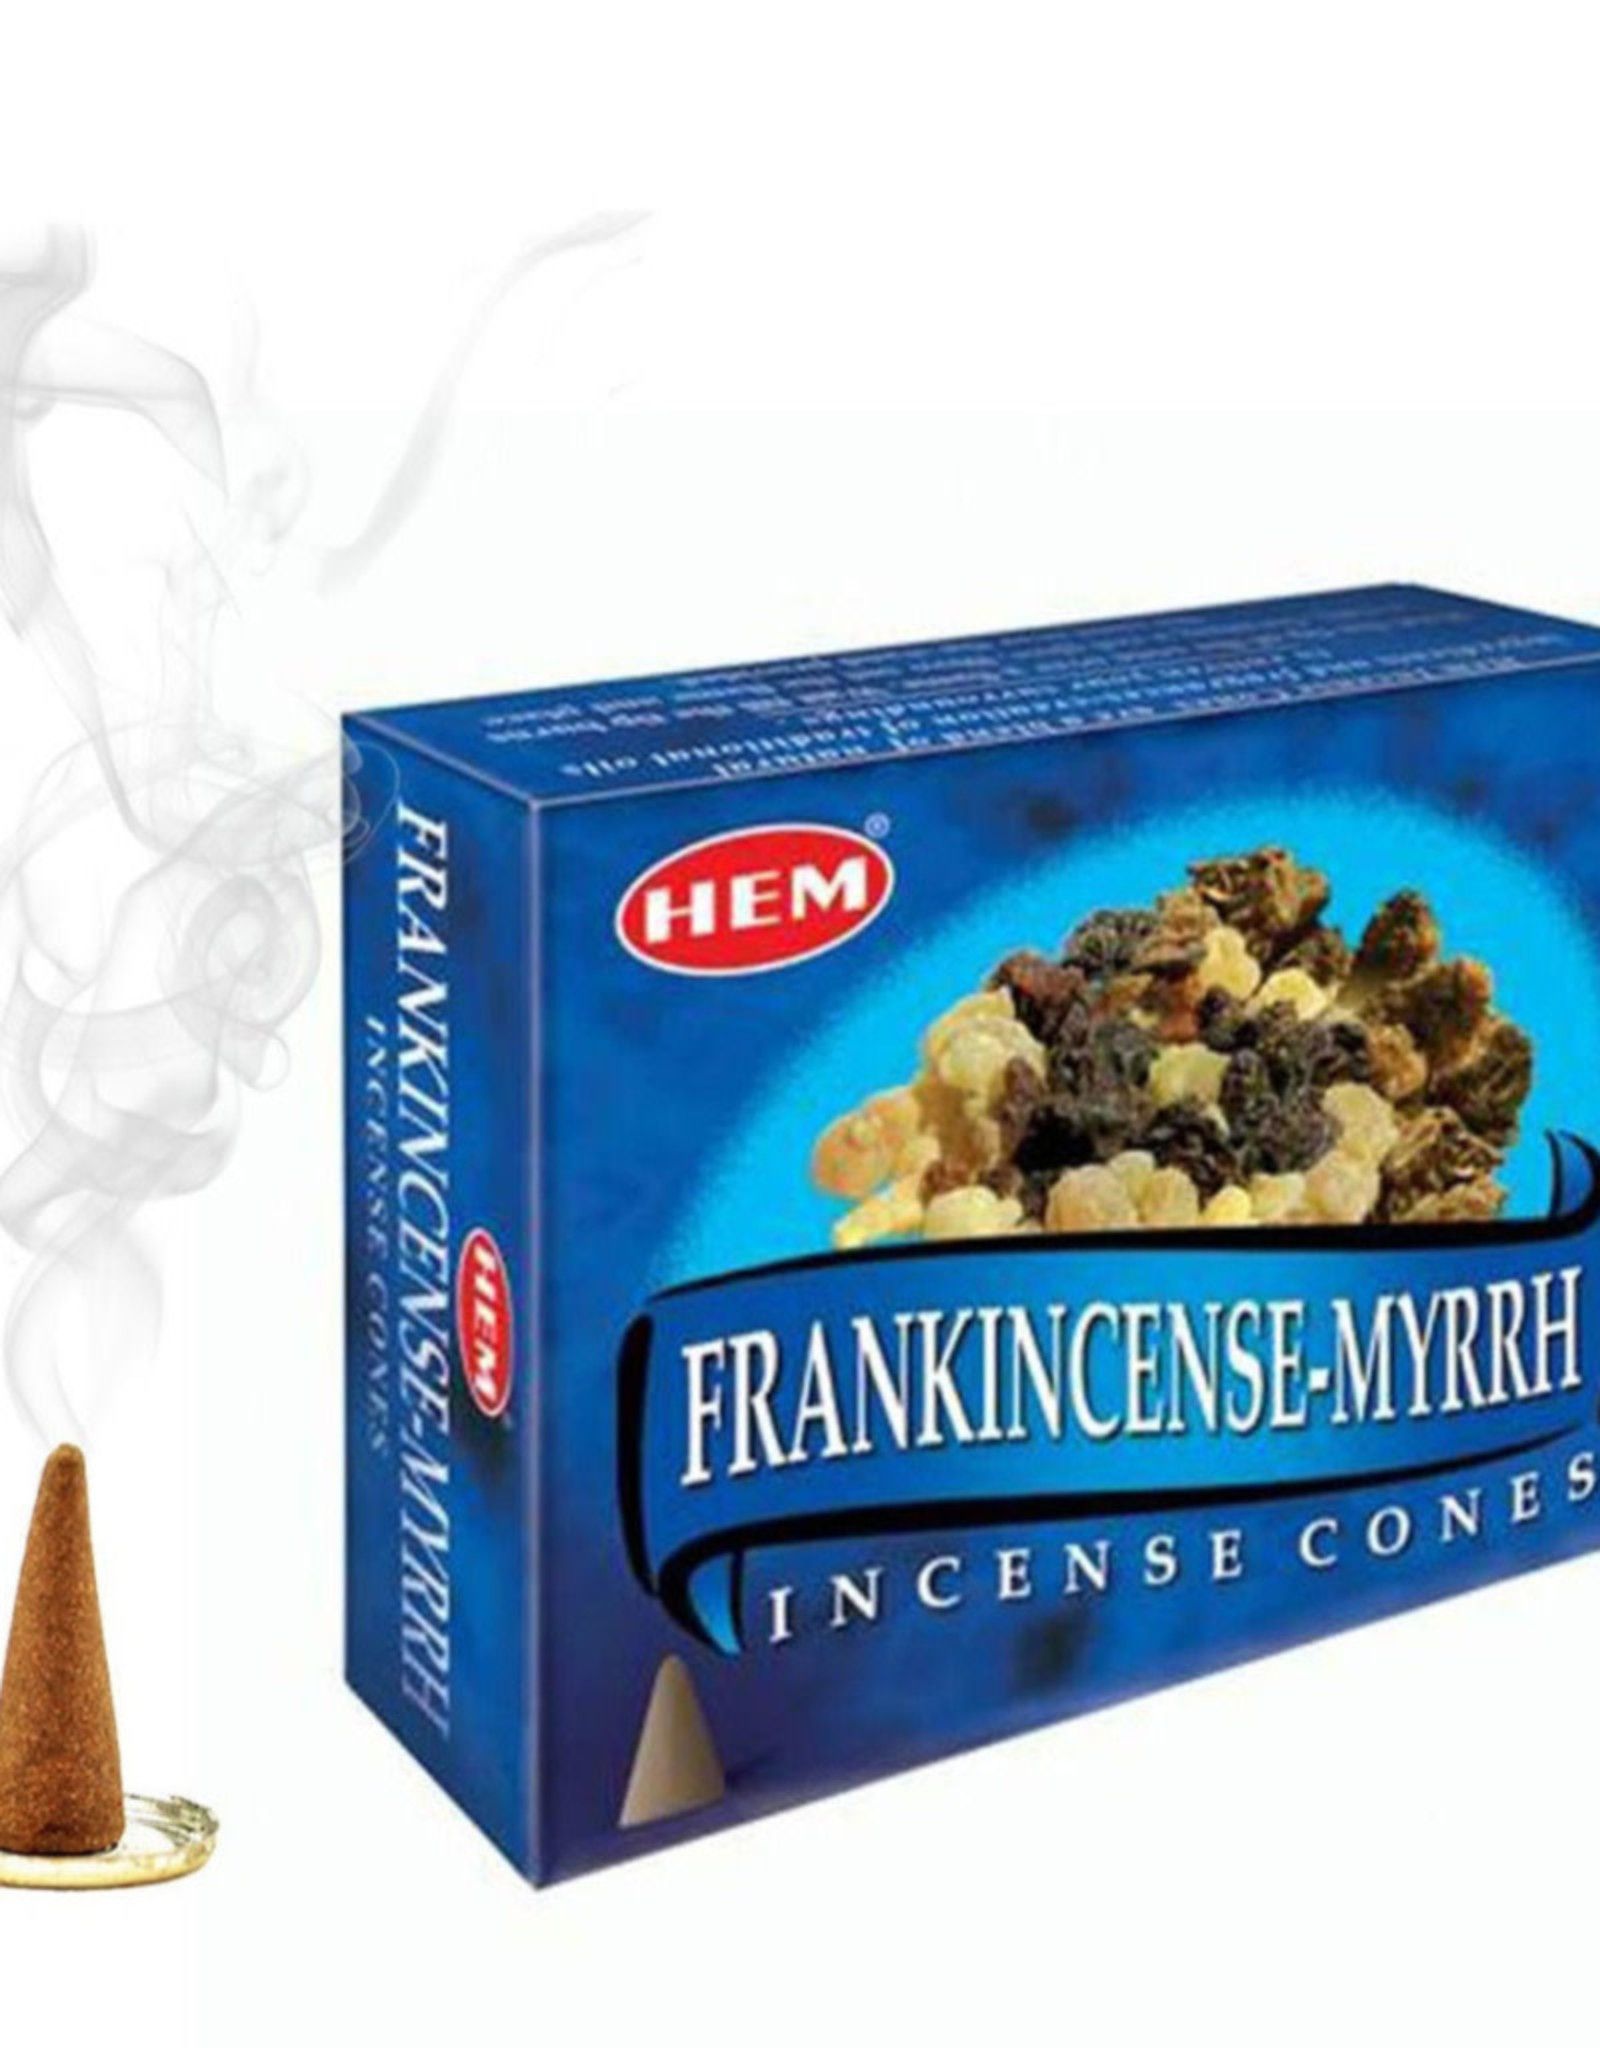 HEM Frankincense & Myrrh HEM Incense Cones